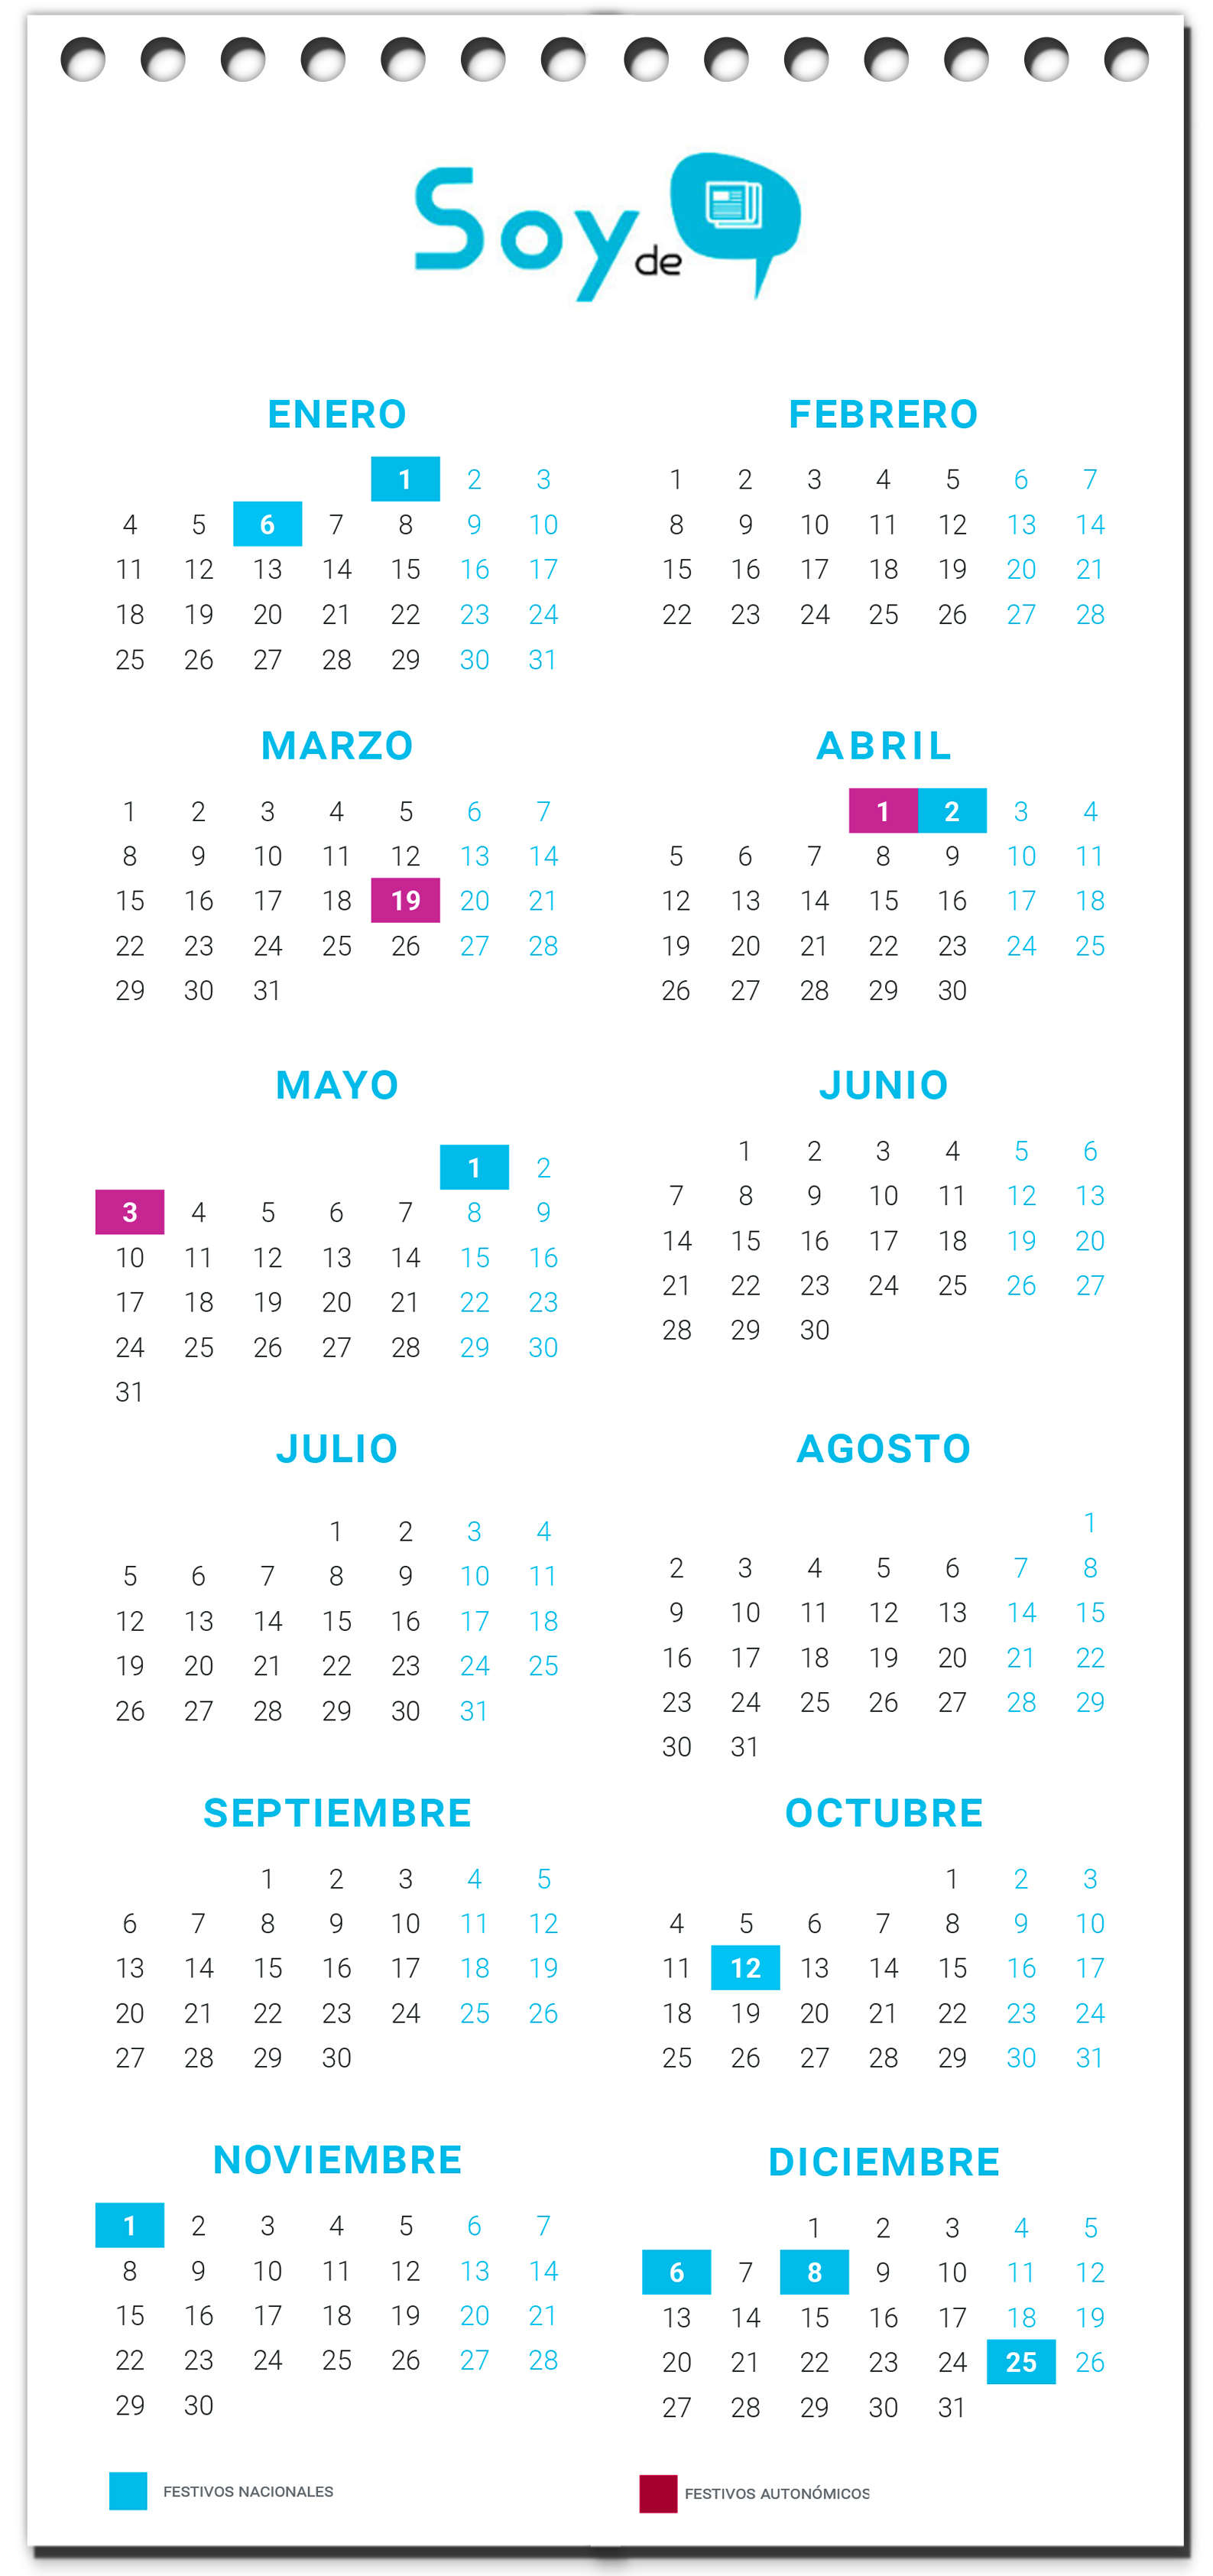 Calendario laboral Comunidad de Madrid 2021 - Soyde.